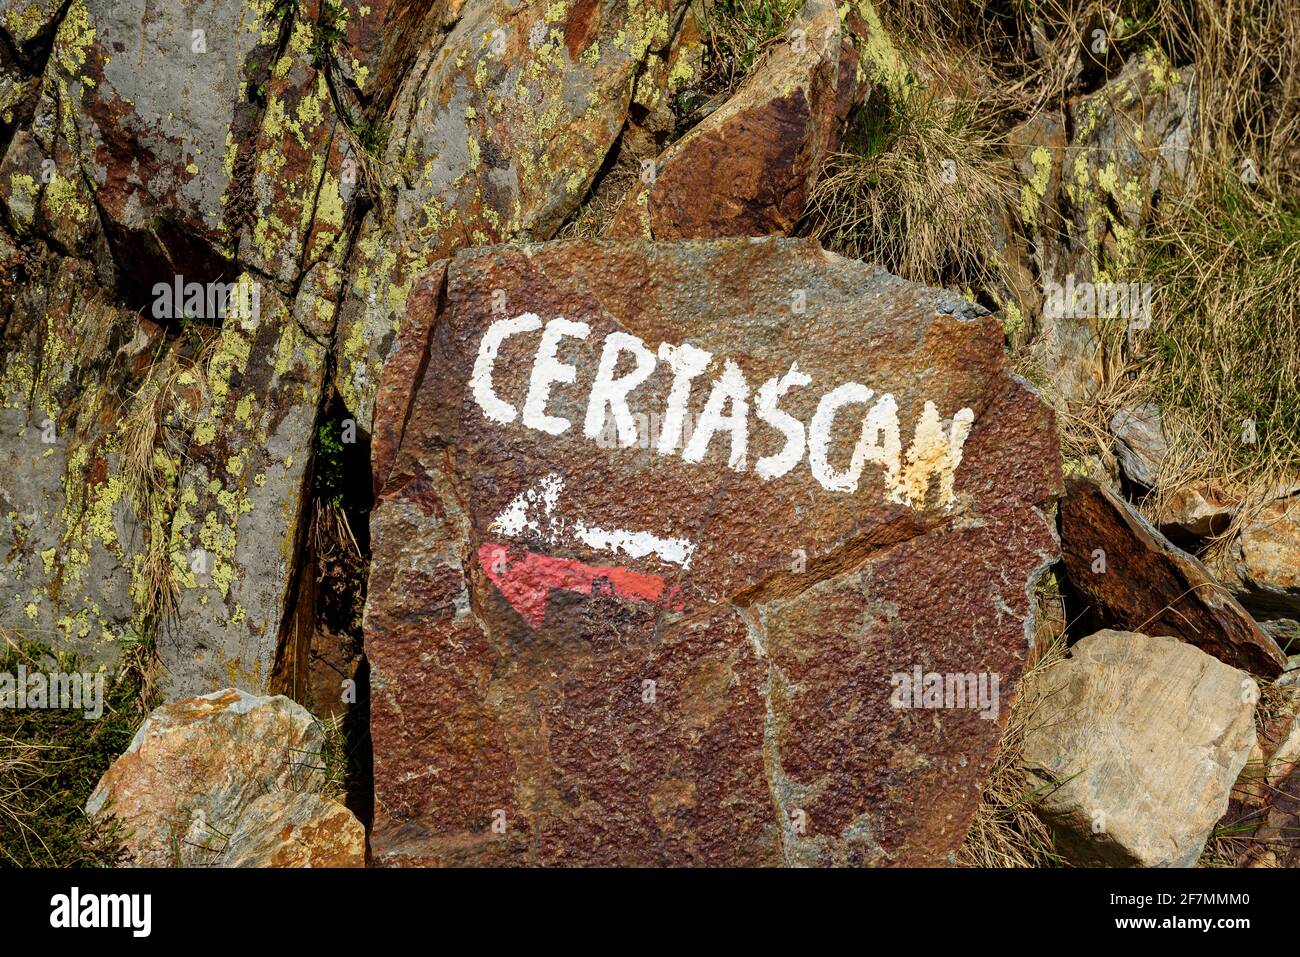 CARTELLO SEGNALETICO GR verso Certascan (Alt Pirineu Natural Park, Catalogna, Spagna, Pirenei) ESP: Señal indicador de GR hacia Certascan (Cataluña) Foto Stock